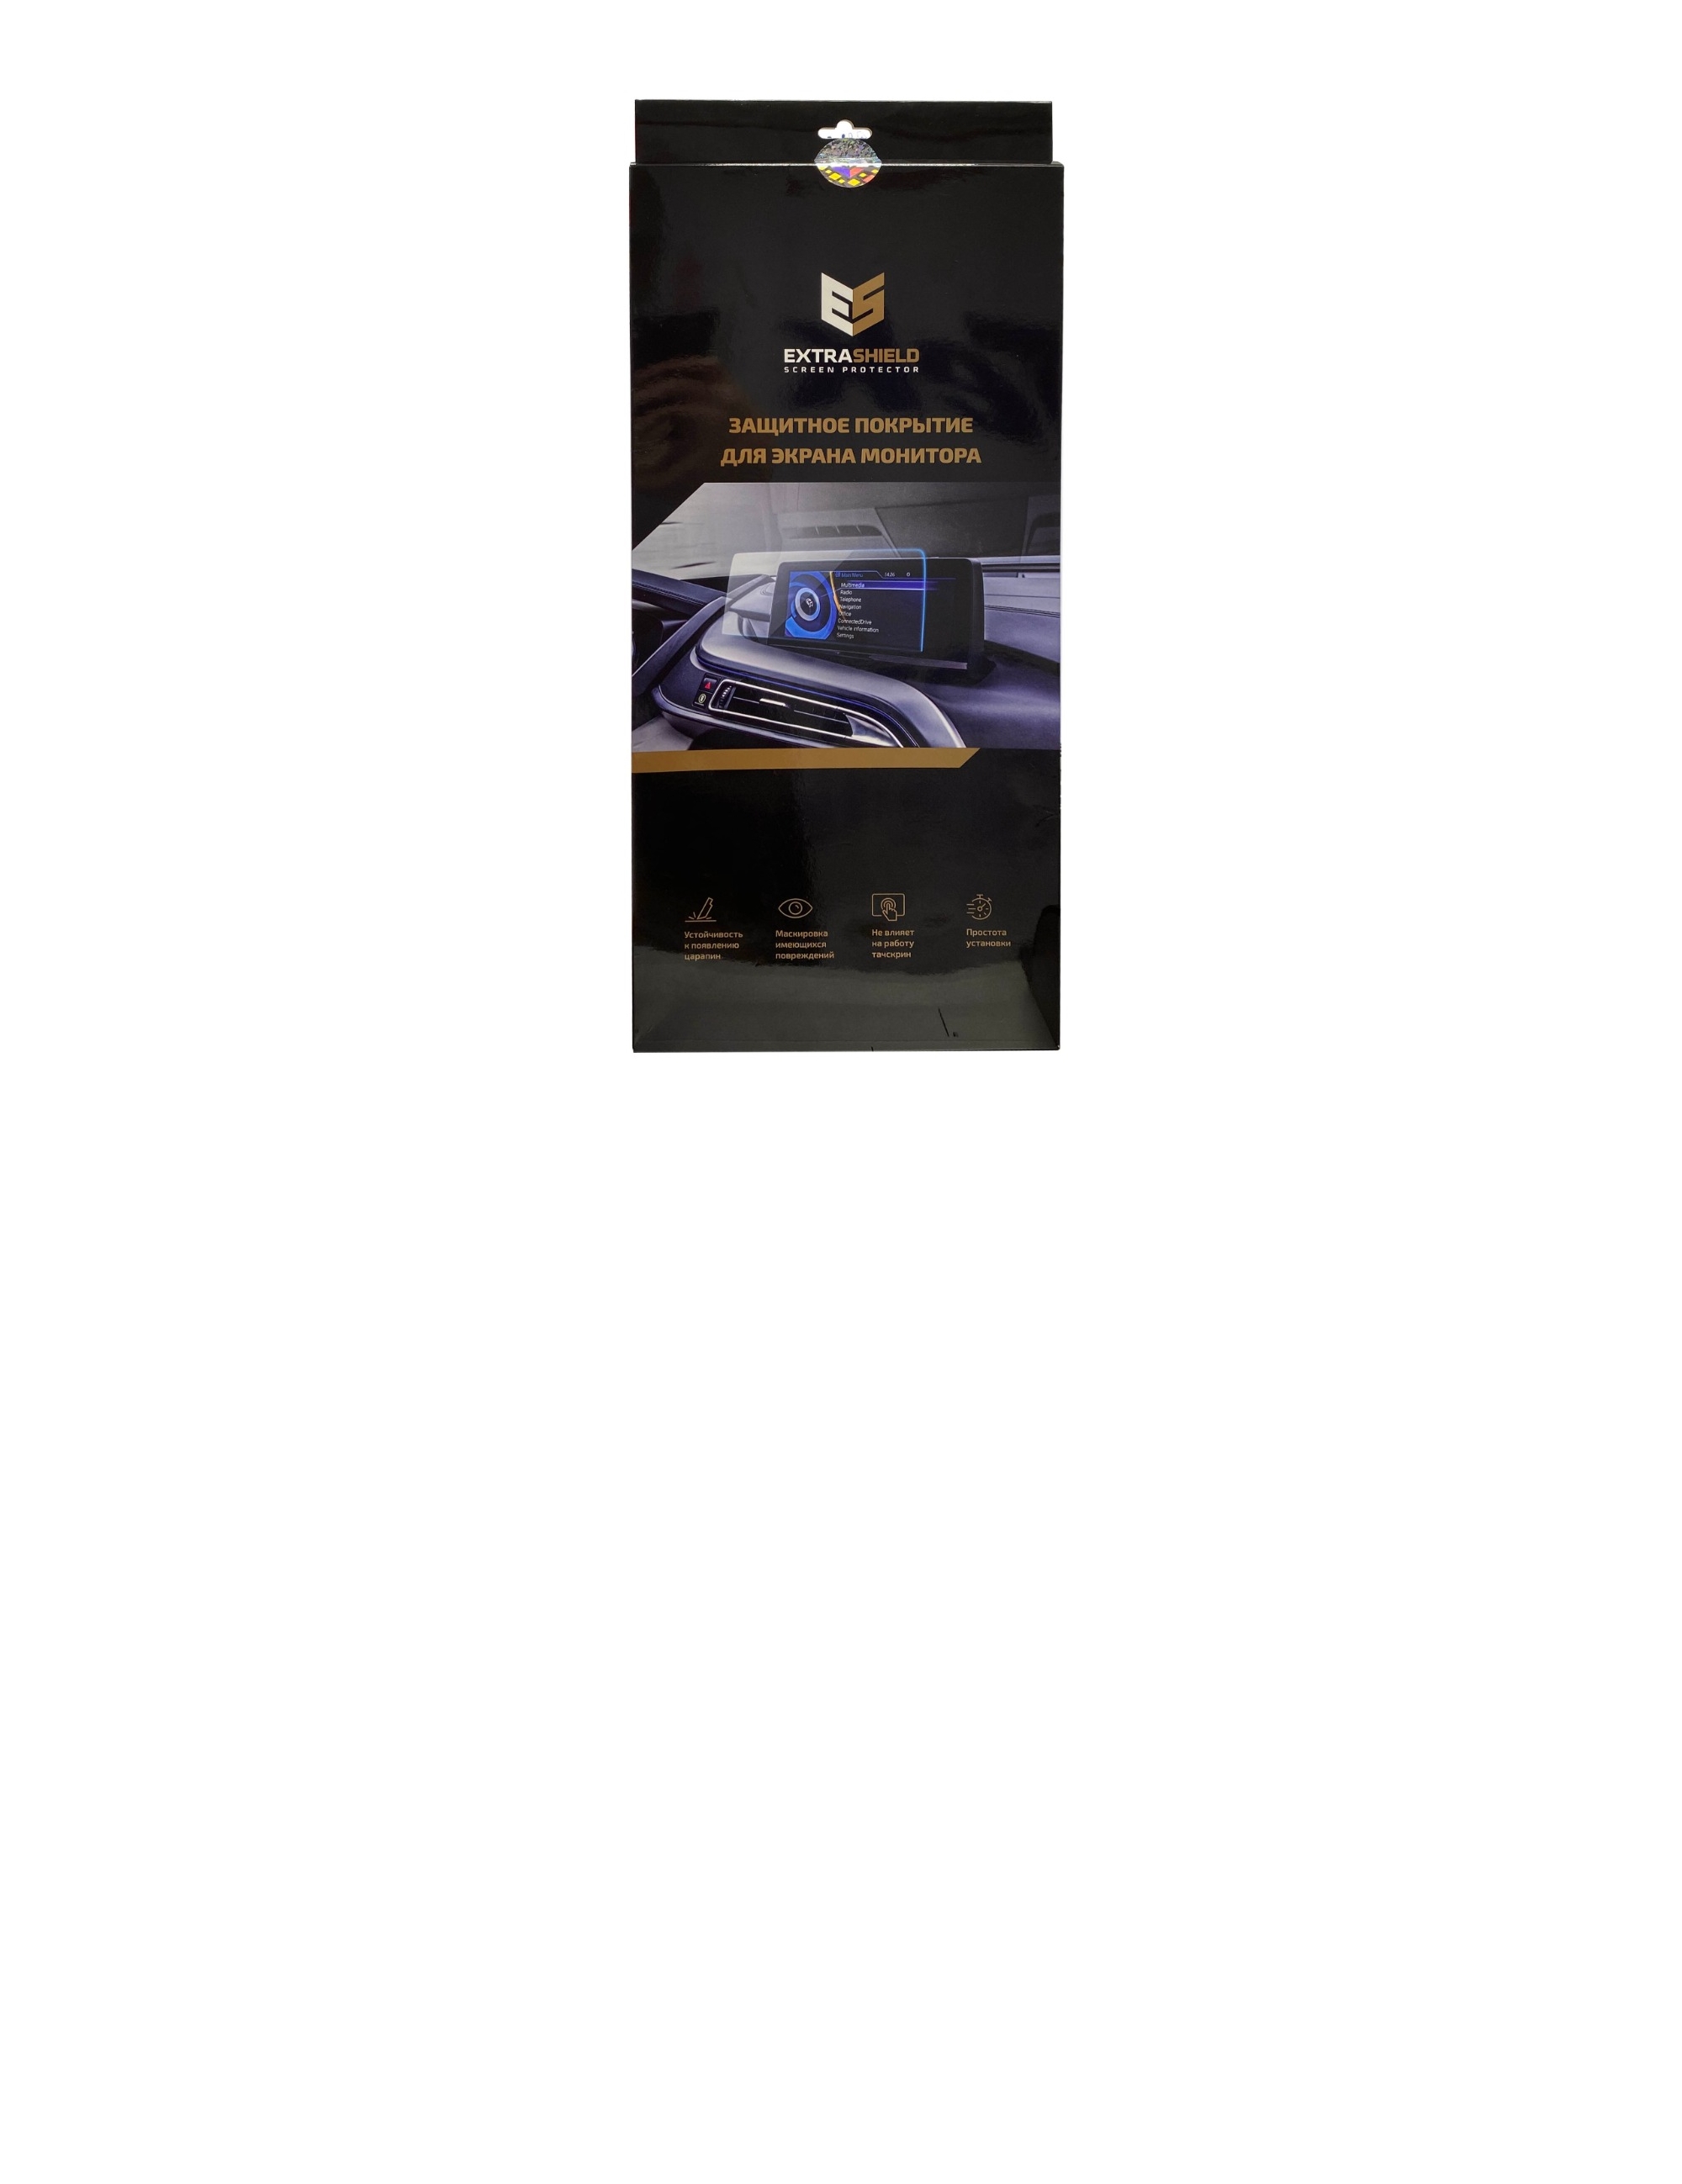 Skoda Octavia 2016 - 2019 мультимедиа Columbus 9.2 Защитное стекло Матовая